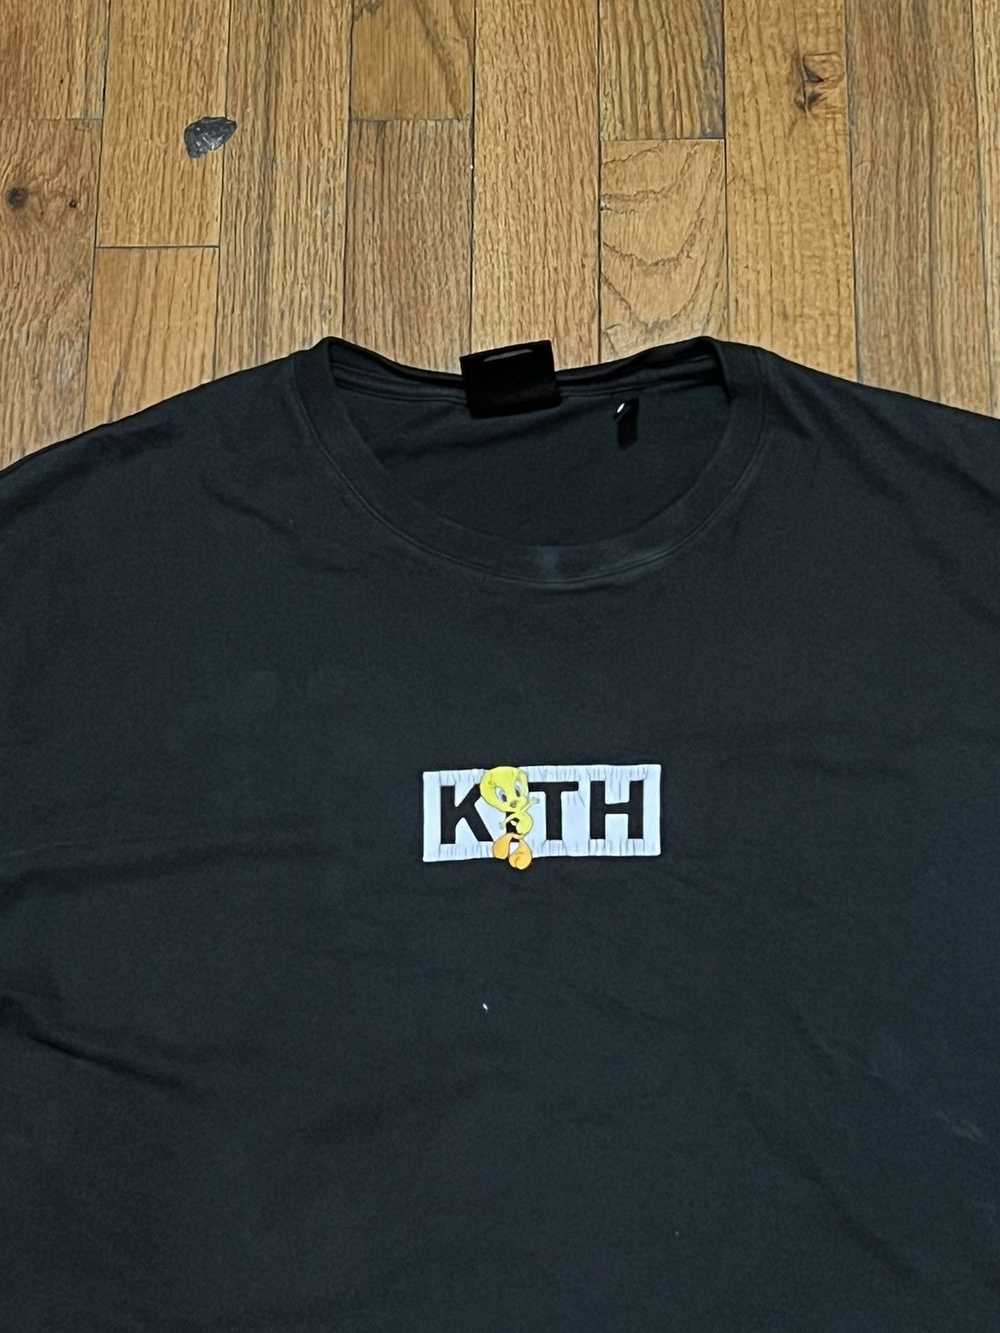 Kith Kith x Looney Tunes T-Shirt size large - image 2